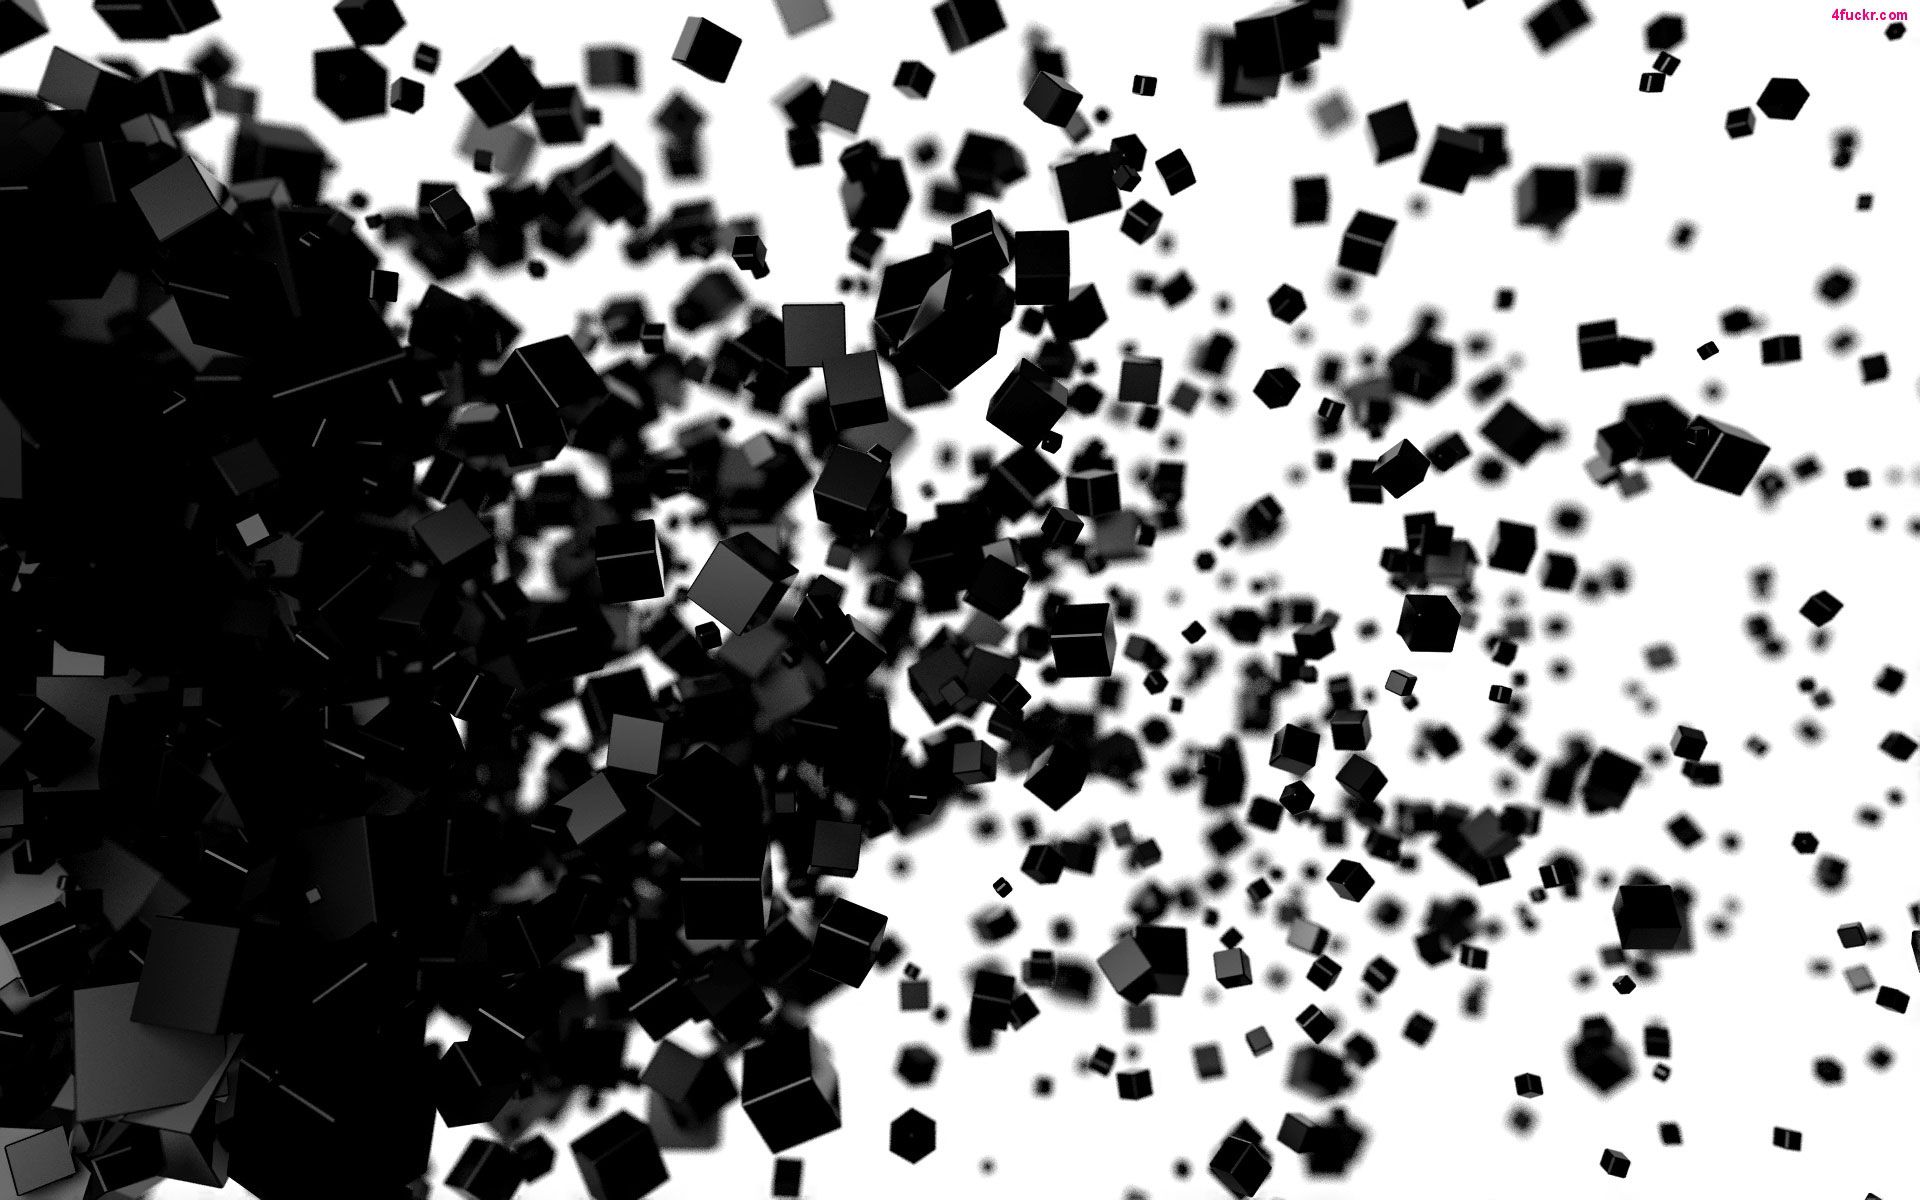 عکس انفجار با افکت سیاه و سفید